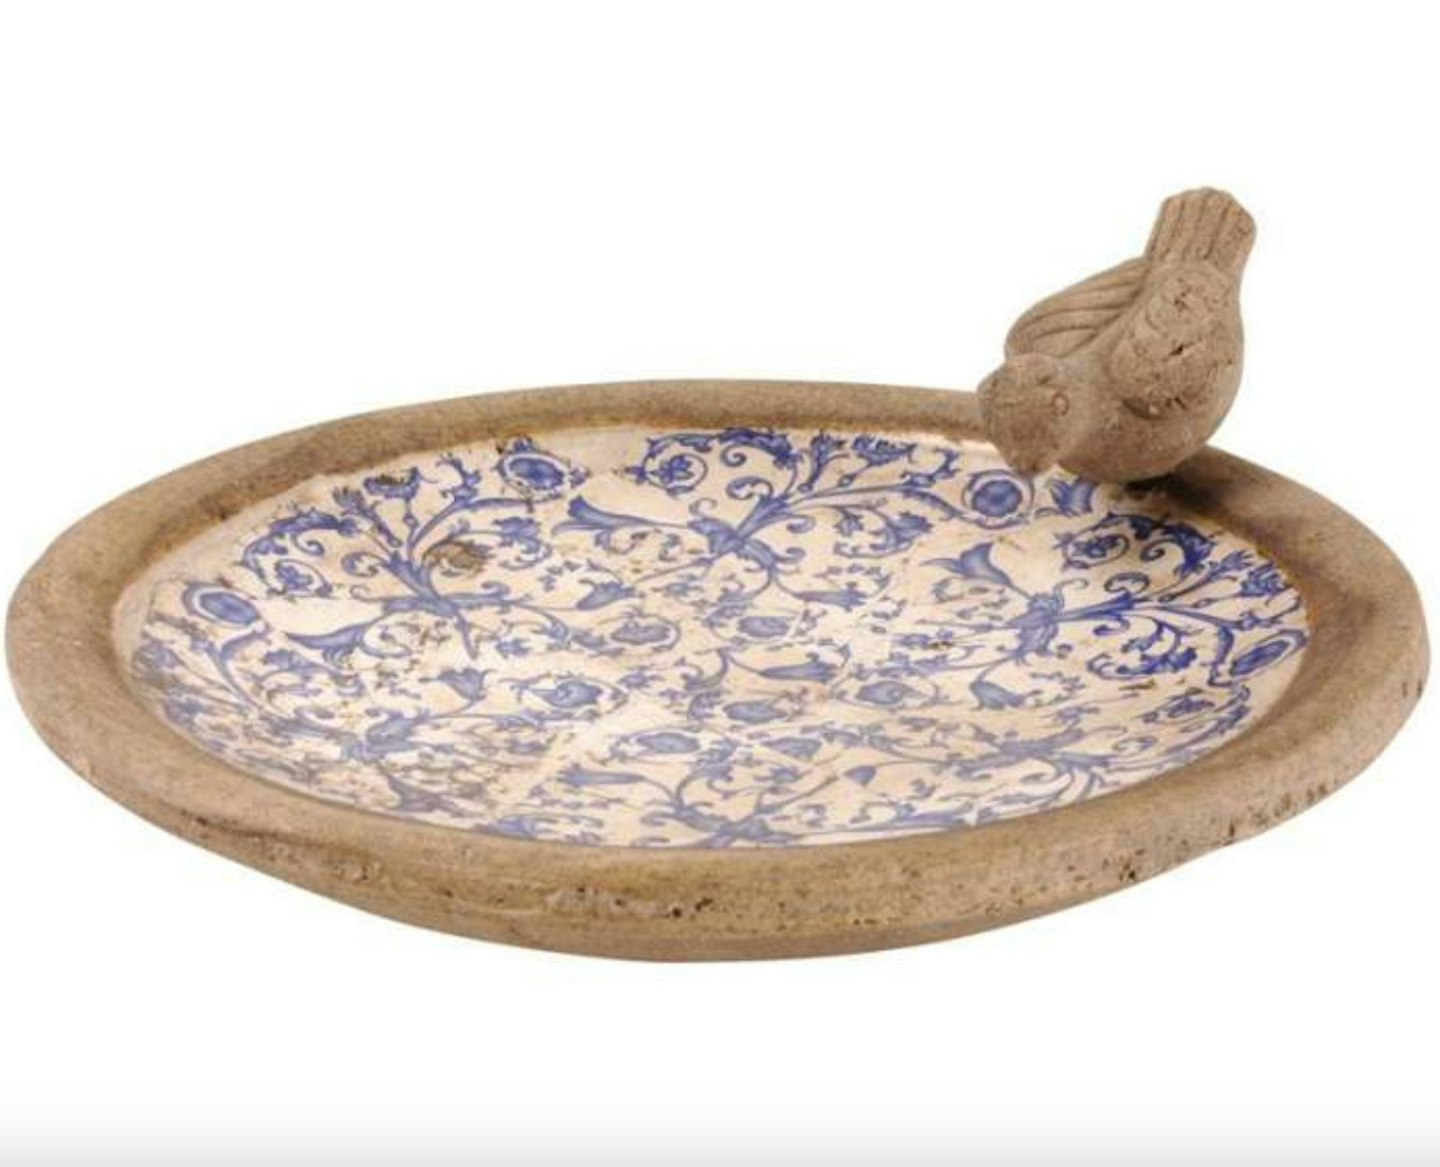 Aged Ceramic Bird Bath with Bird Detail